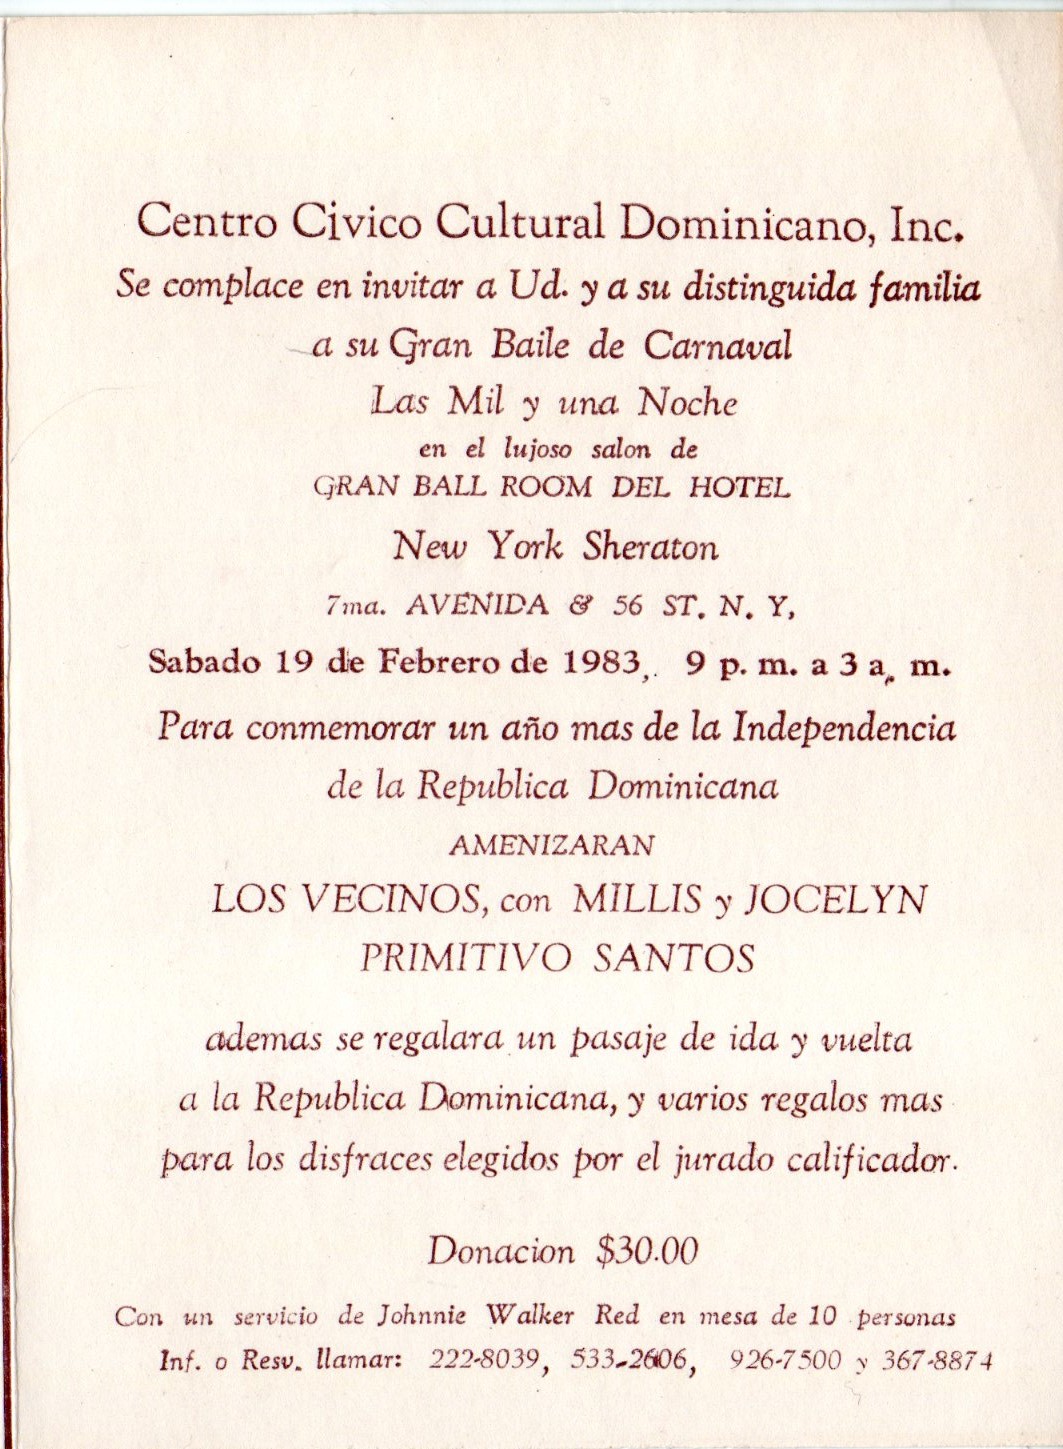 Centro Cívico Cultural Dominicano’s Great Dance Carnival Program, February 19, 1983